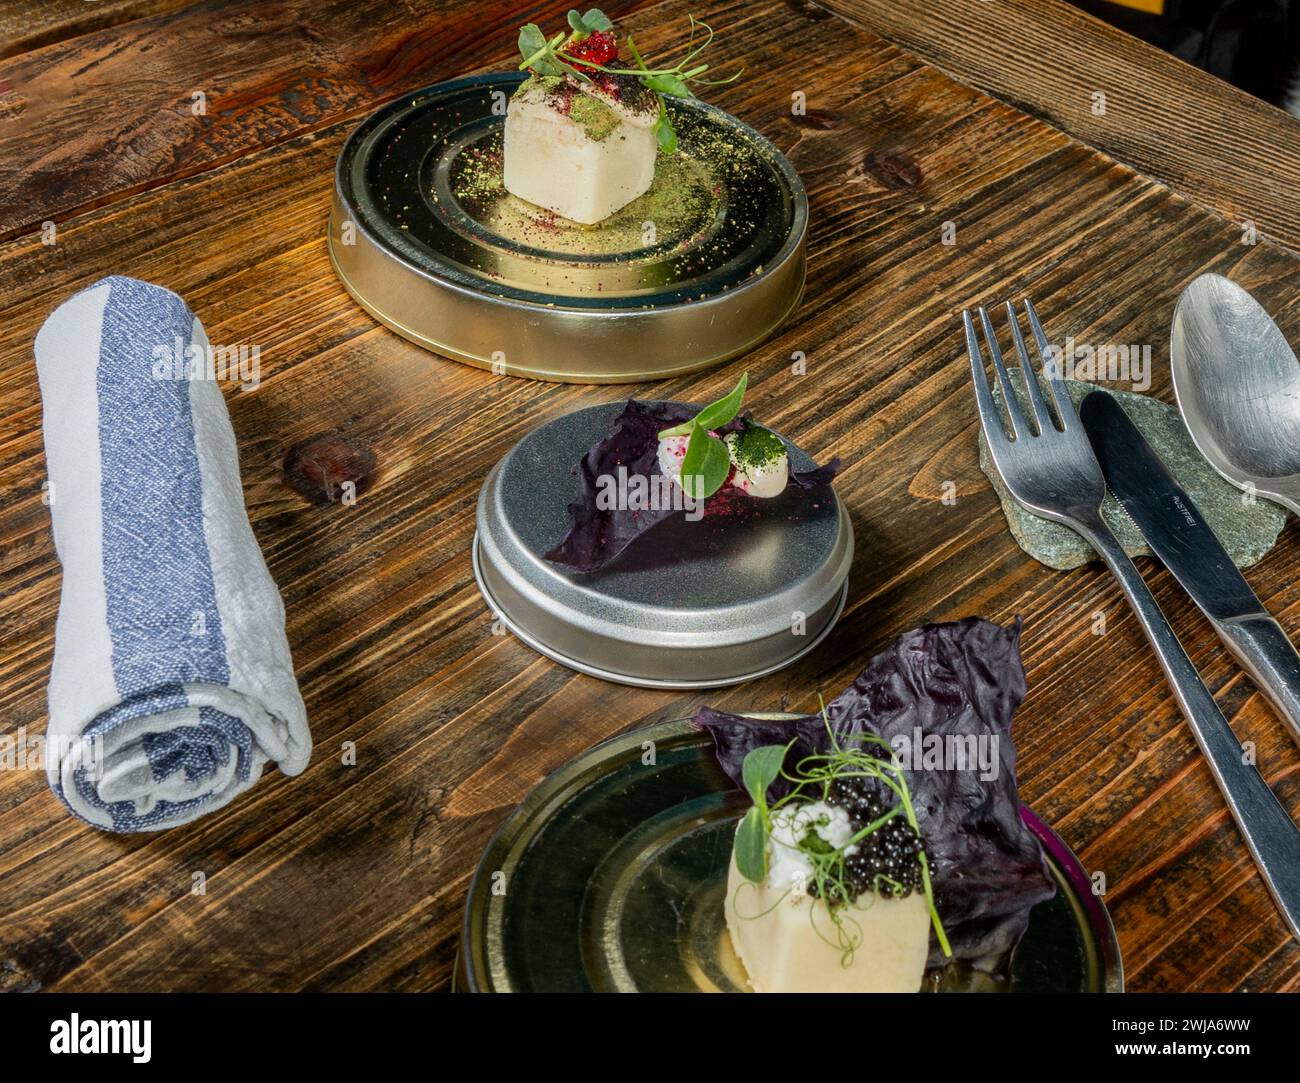 Piatto fusion gourmet presentato con gusto in un ristorante stellato Michelin a Zermatt, che unisce prodotti locali di stagione per un'esperienza gastronomica di alto livello. Foto Stock